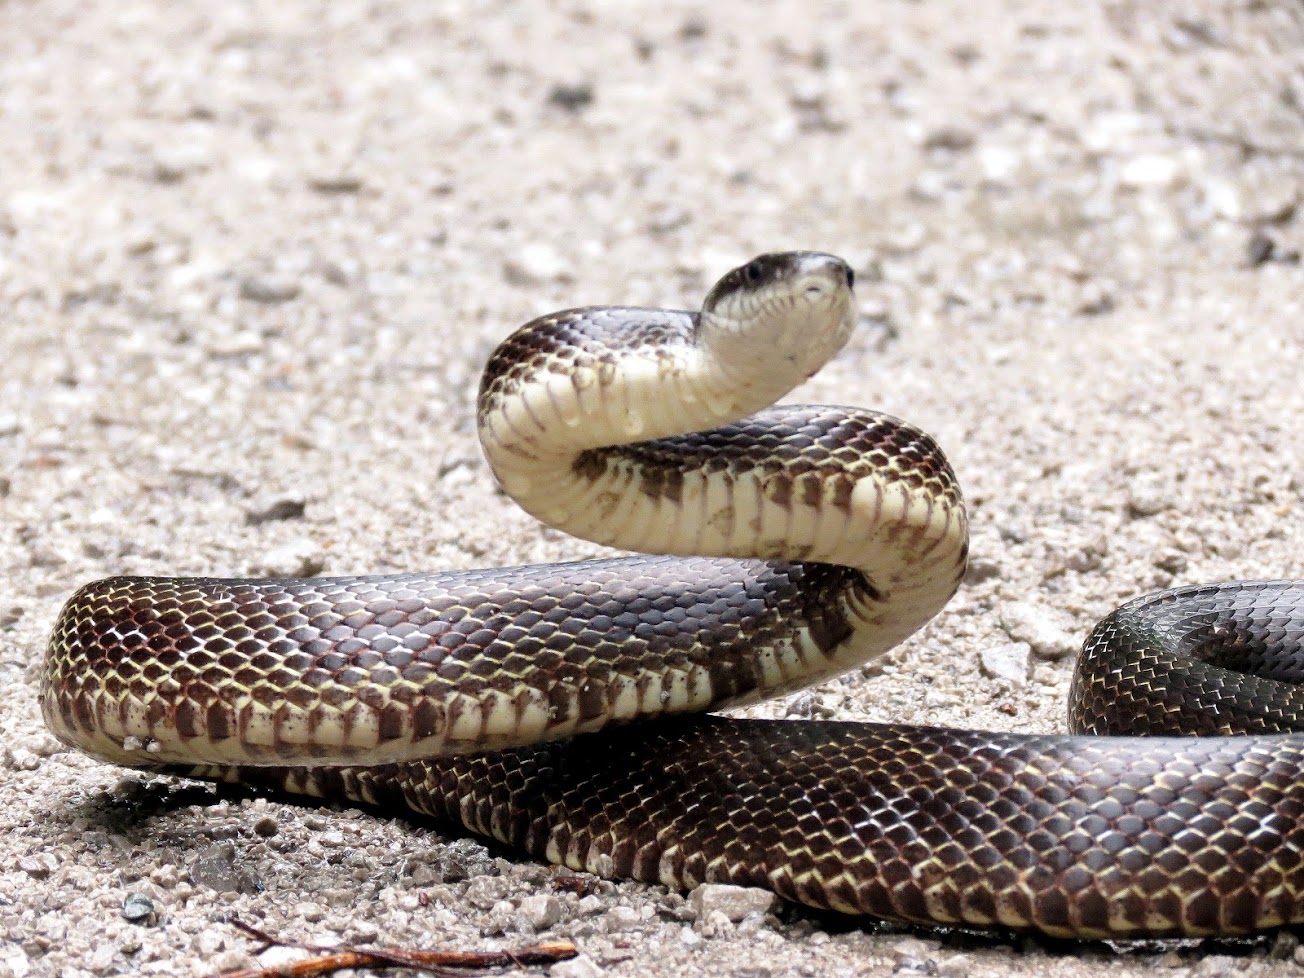 Gray rat snake coiled